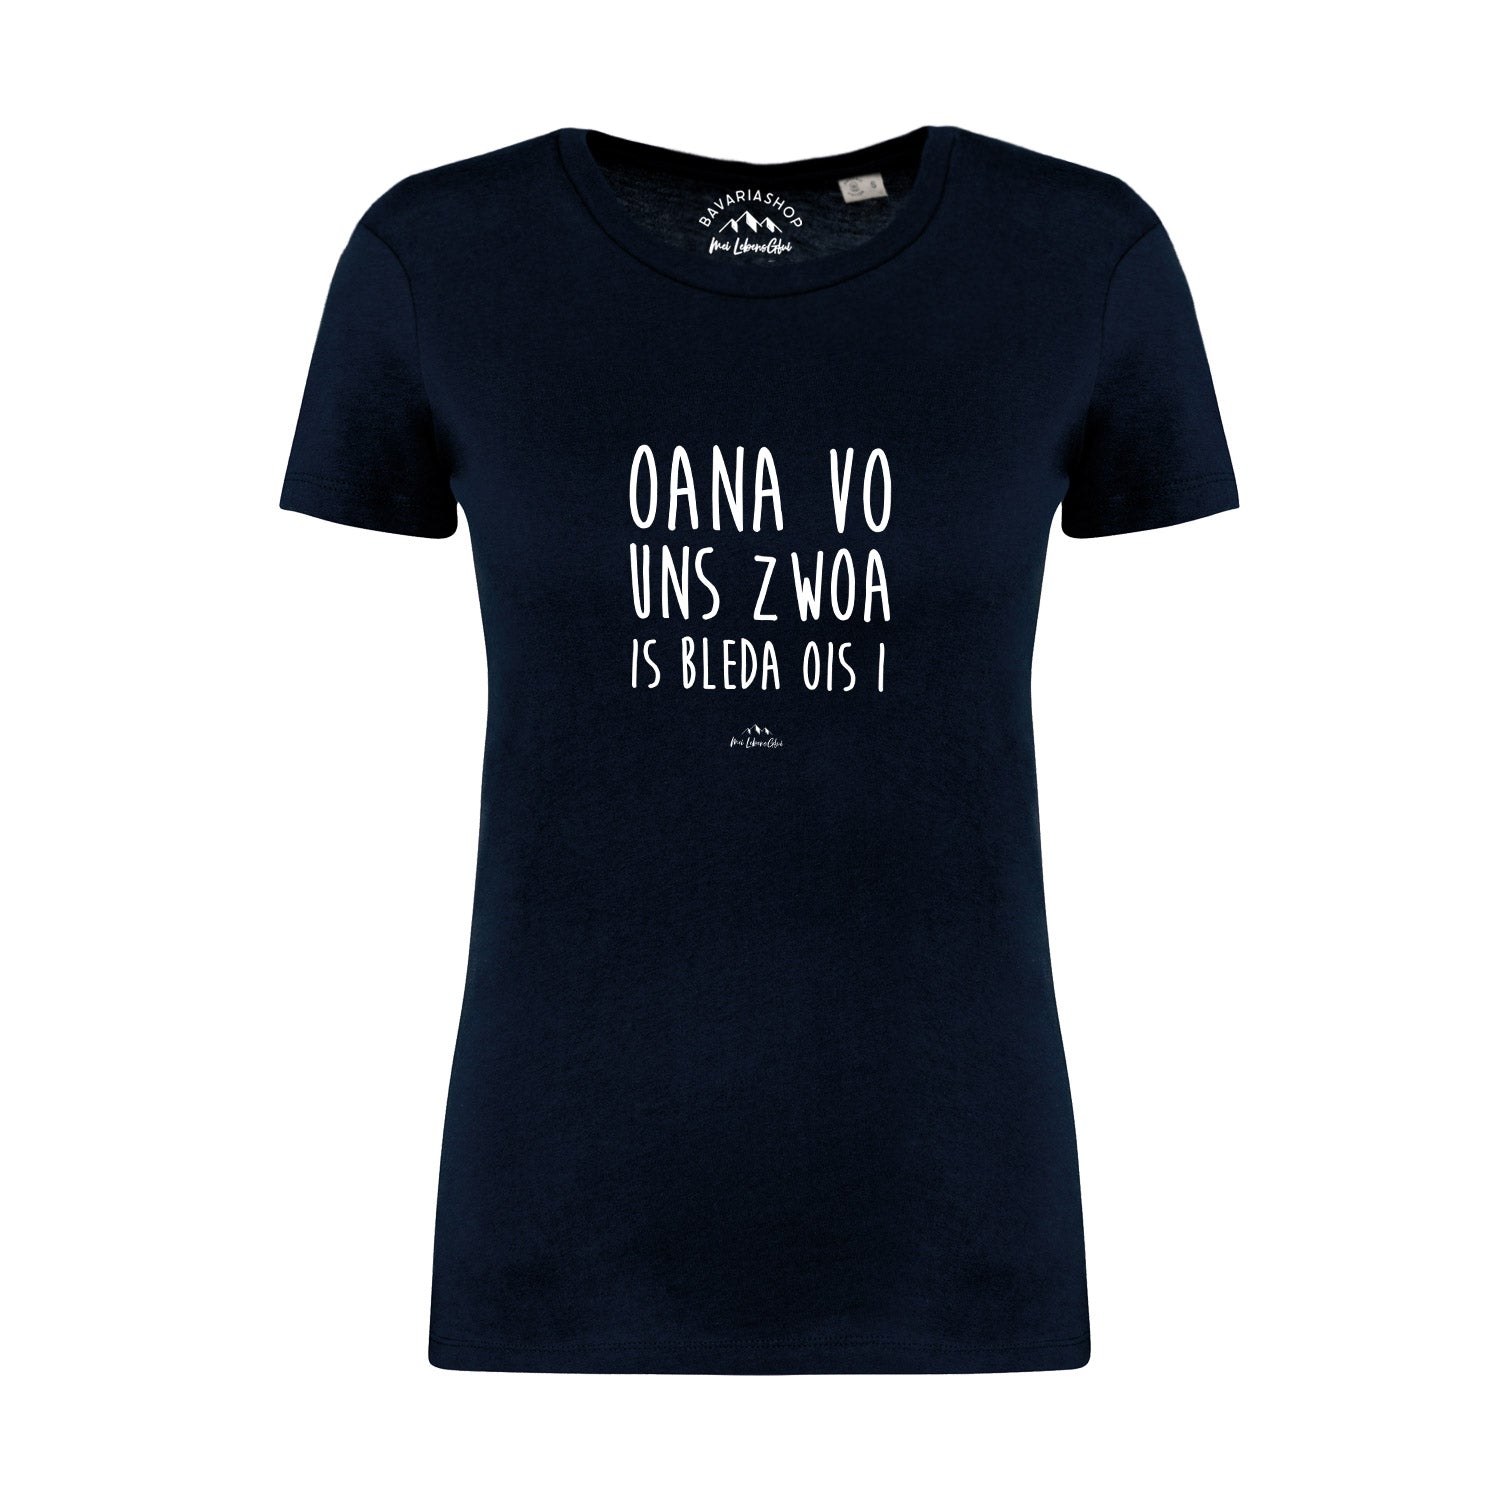 Damen T-Shirt "Oana vo uns zwoa..."